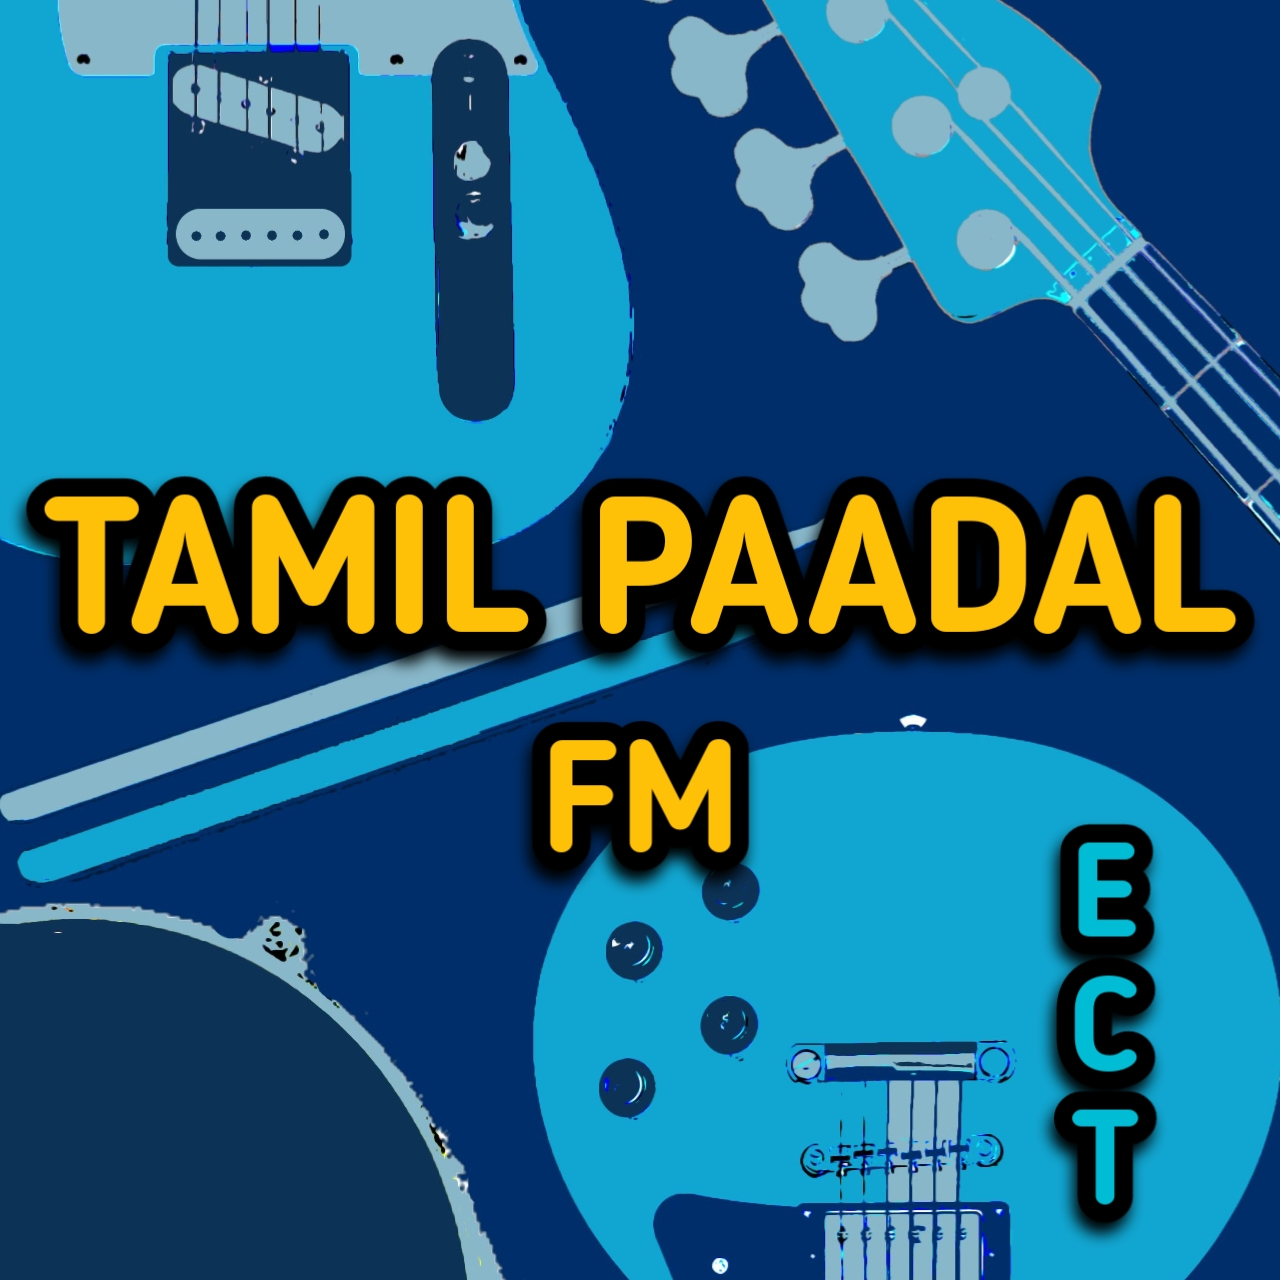 TAMIL PAADAL FM